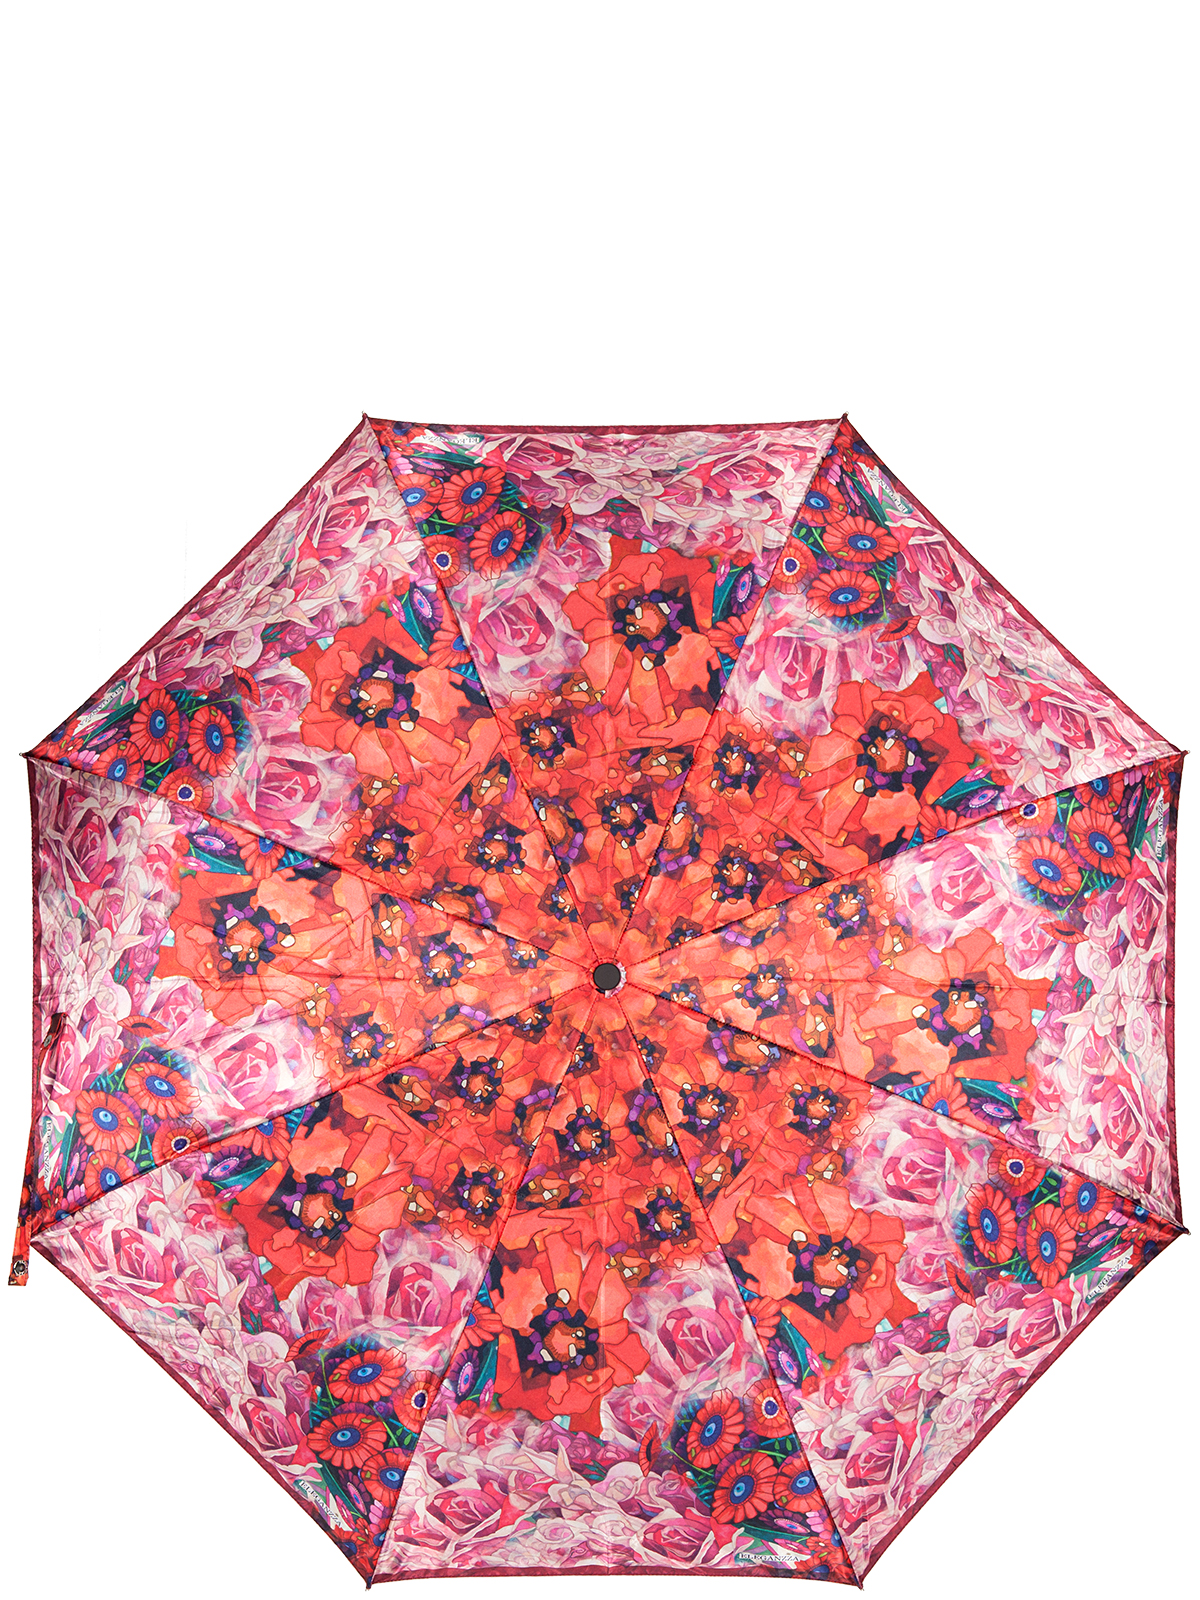 Зонт женский Eleganzza, автомат, 3 сложения, цвет: красный, белый, сиреневый. A3-05-0313LS